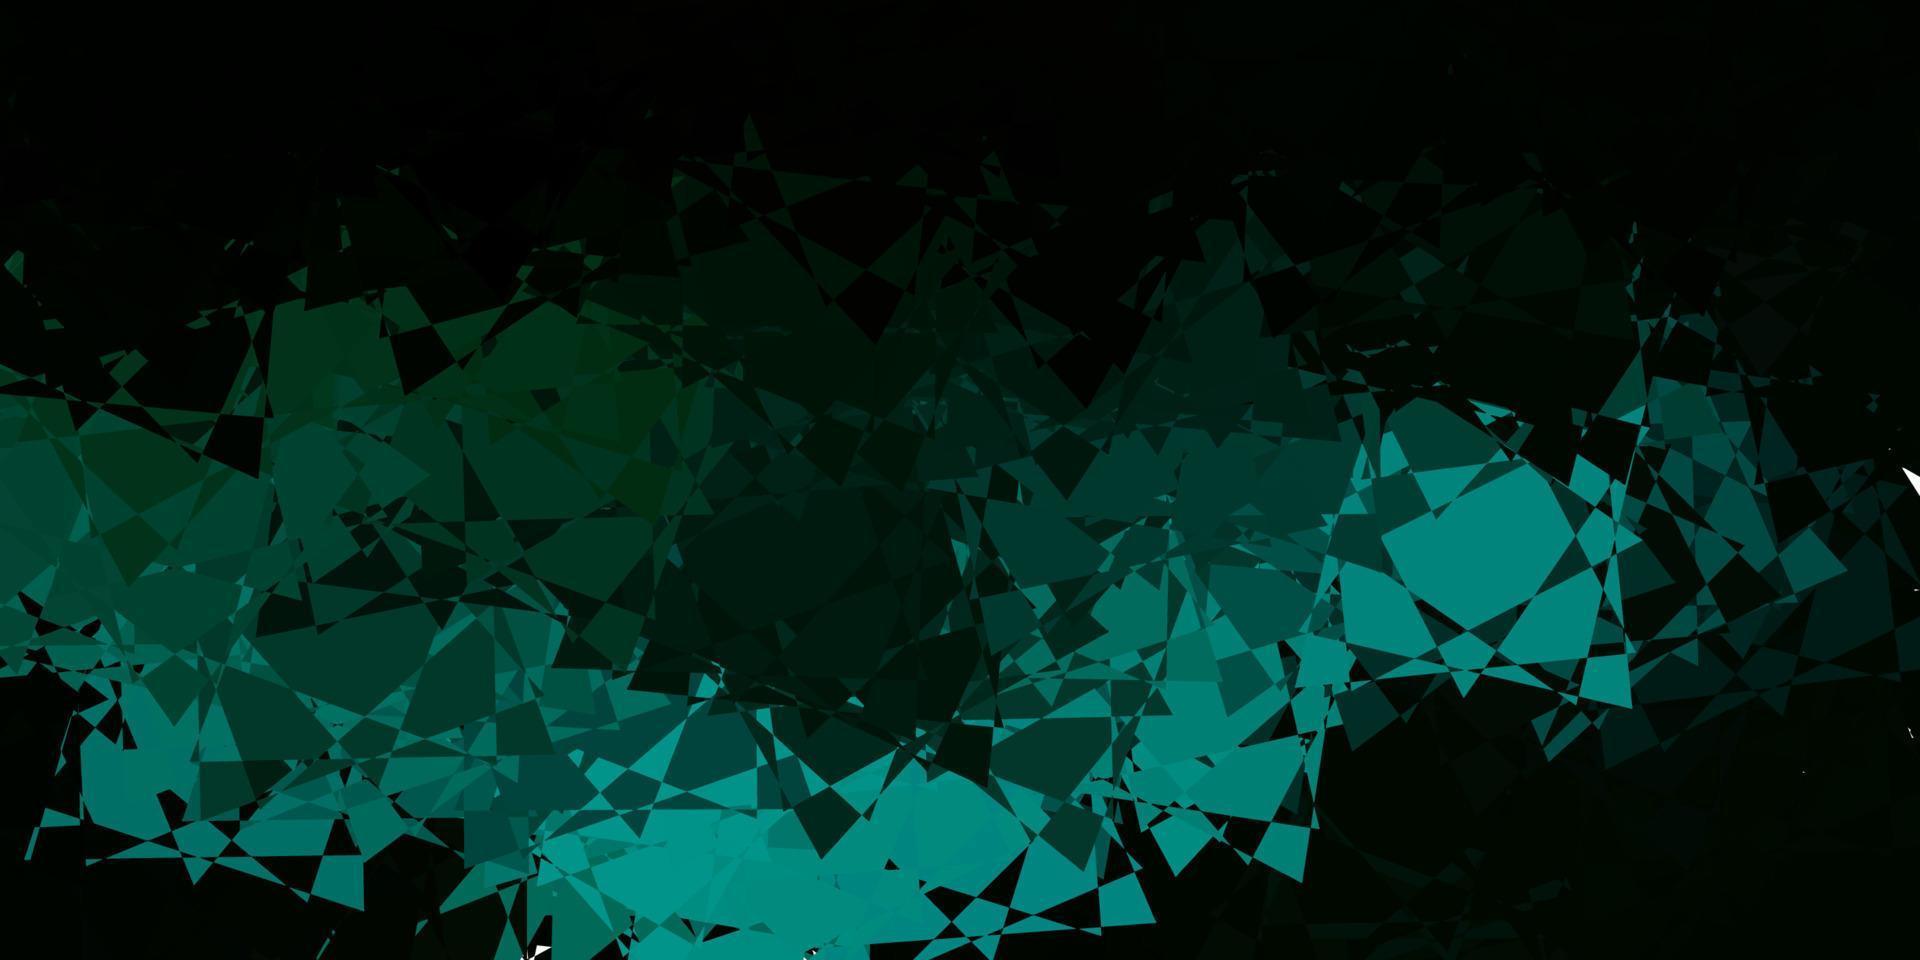 toile de fond de vecteur vert foncé avec des triangles, des lignes.